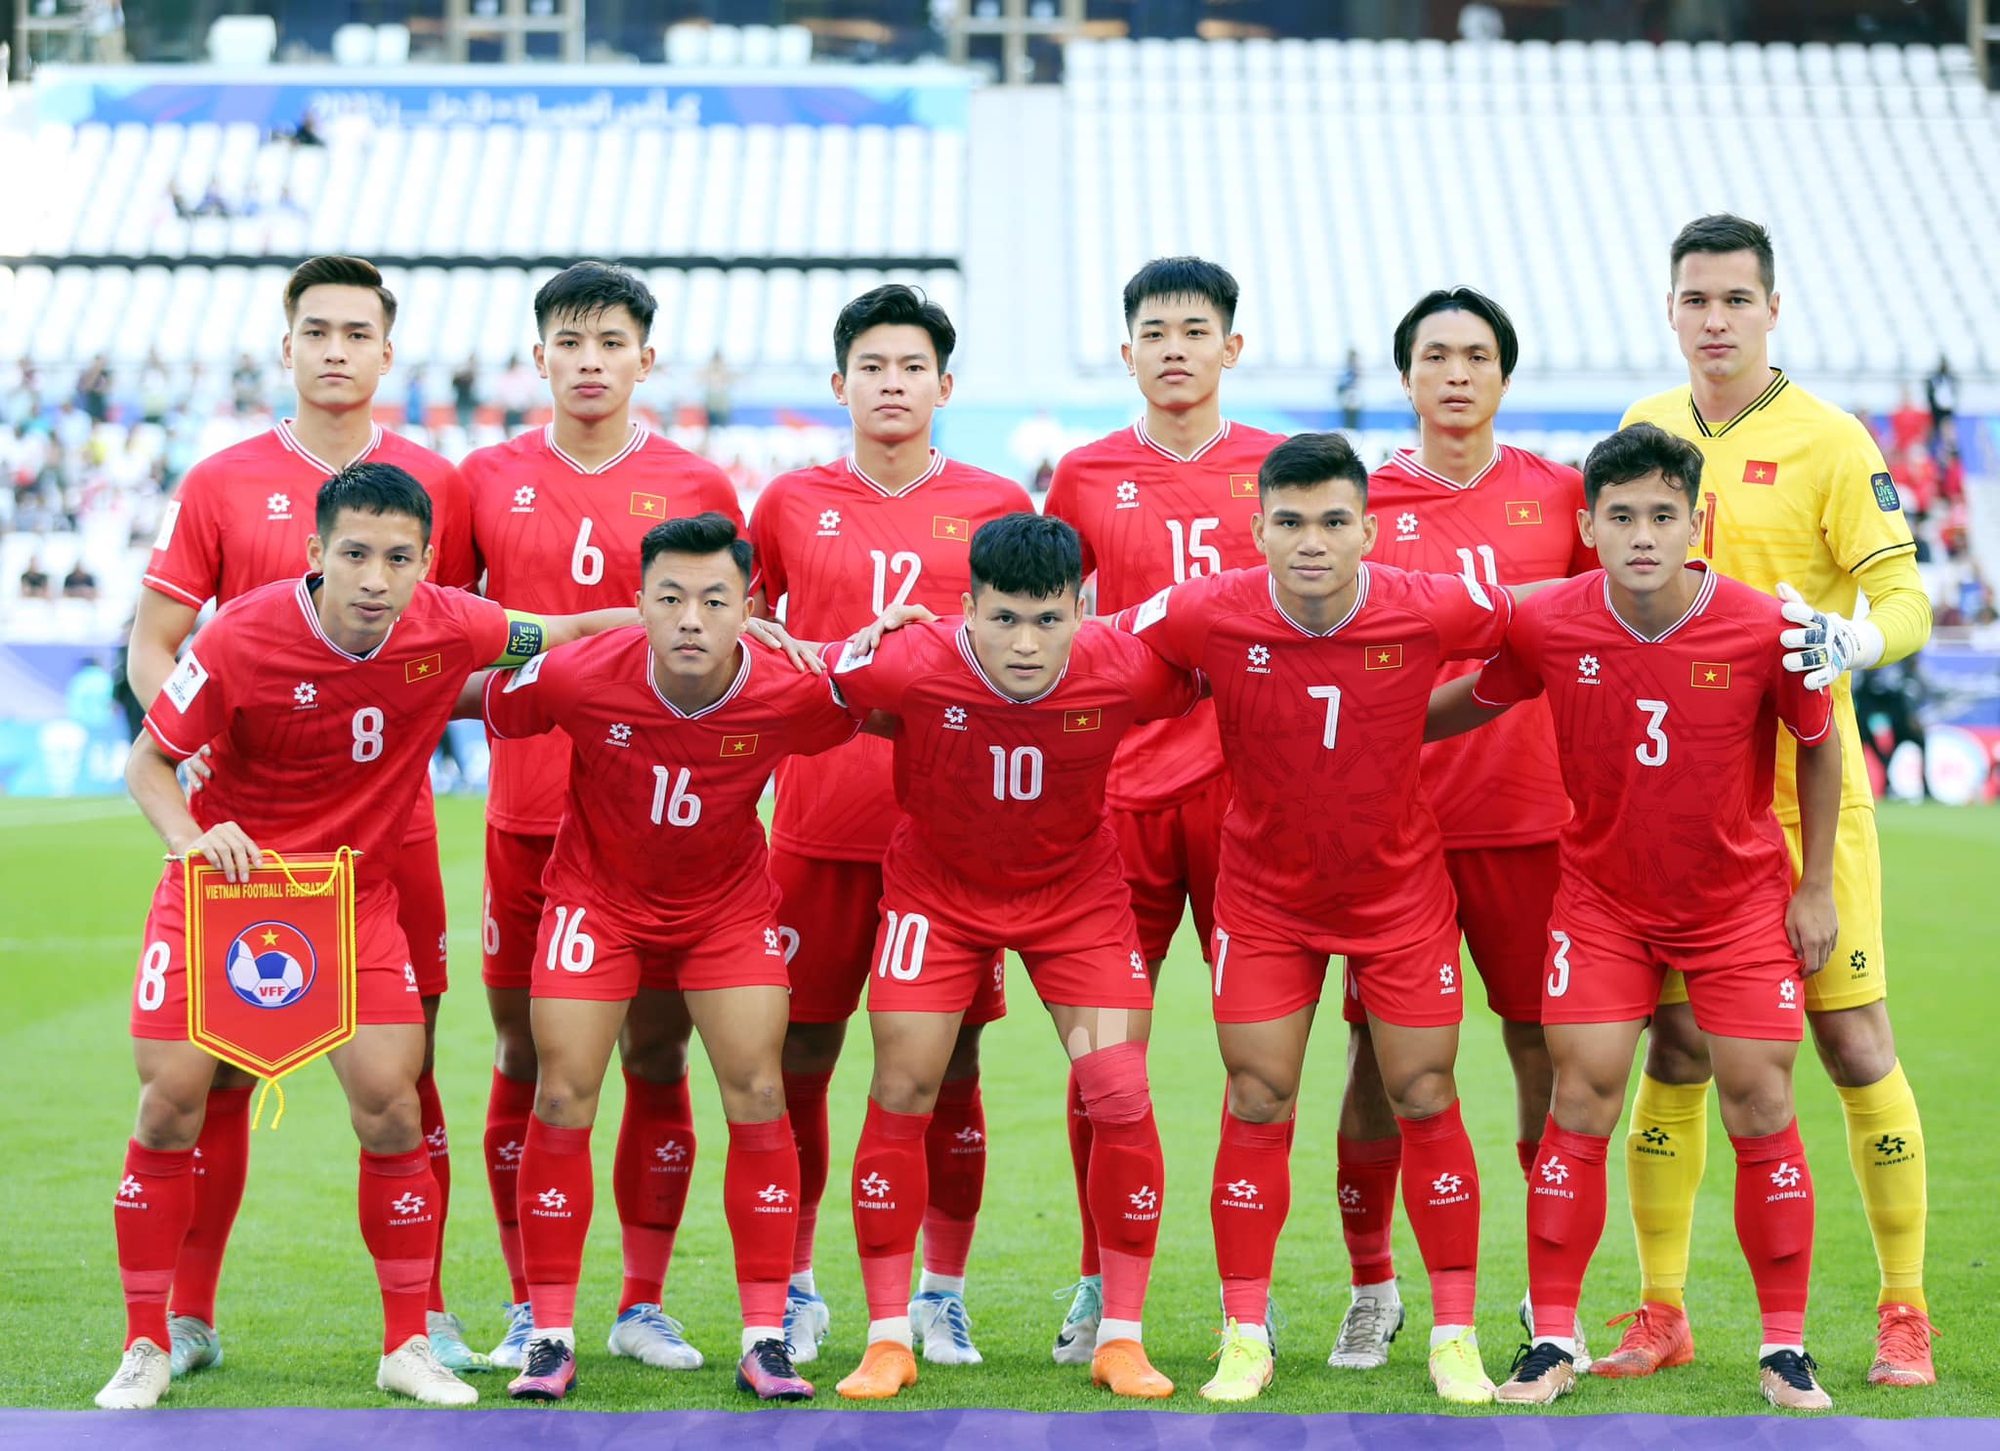 Thấy gì từ trận đội tuyển Việt Nam thua Nhật Bản: Vượt bão hoài nghi, ươm mầm hy vọng - Ảnh 2.